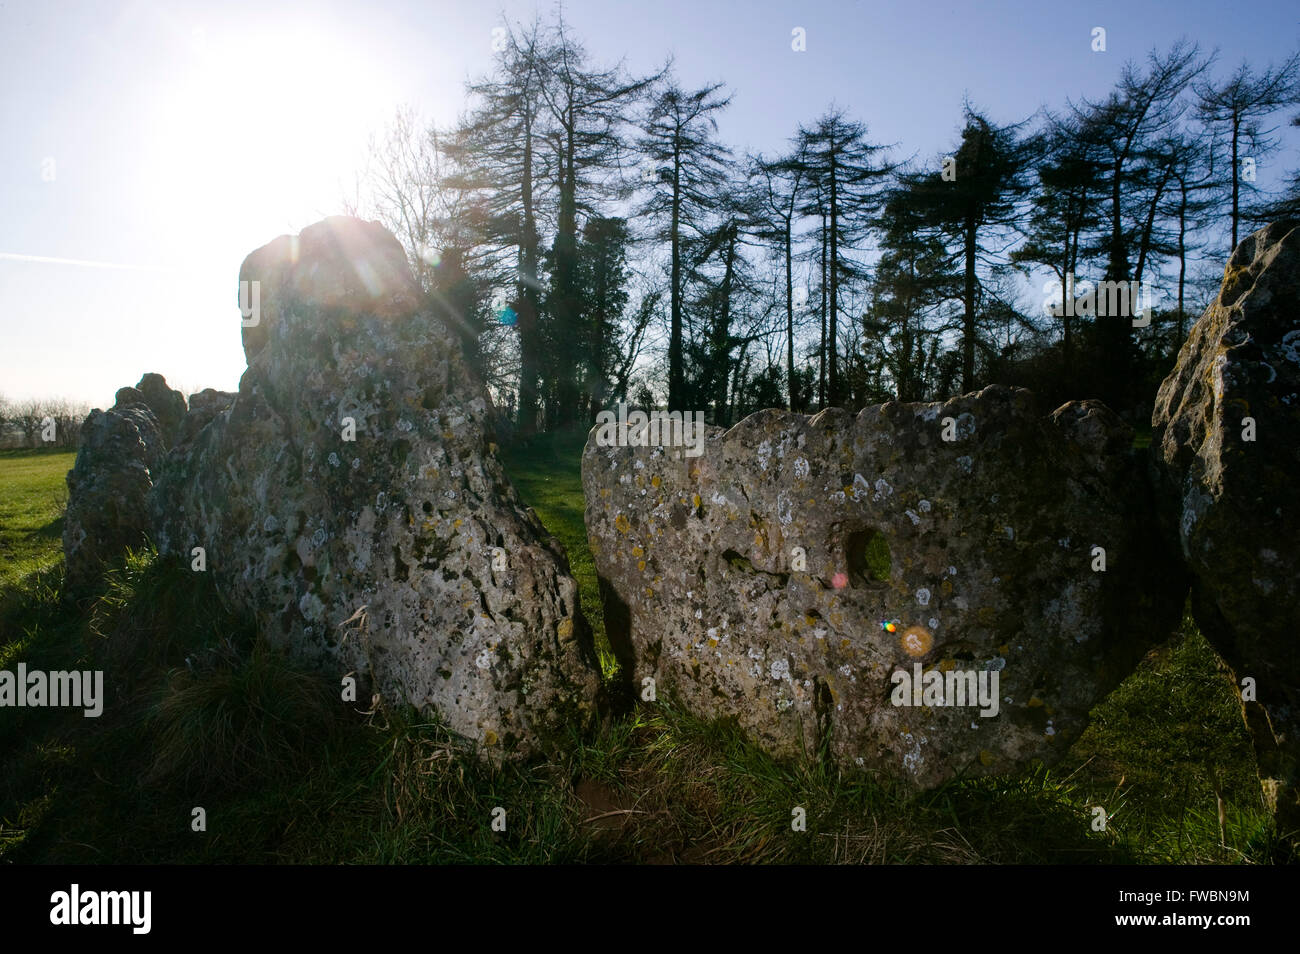 Der Steinkreis und Einzelsteine bekannt als die "Rollright Stones", ein Steinkreis der Jungsteinzeit auf einem Hügel in Oxfordshire, UK. Der Steinkreis wird berichtet, dass durch den Menschen etwa 12:00 vorgenommen wurden. Stockfoto